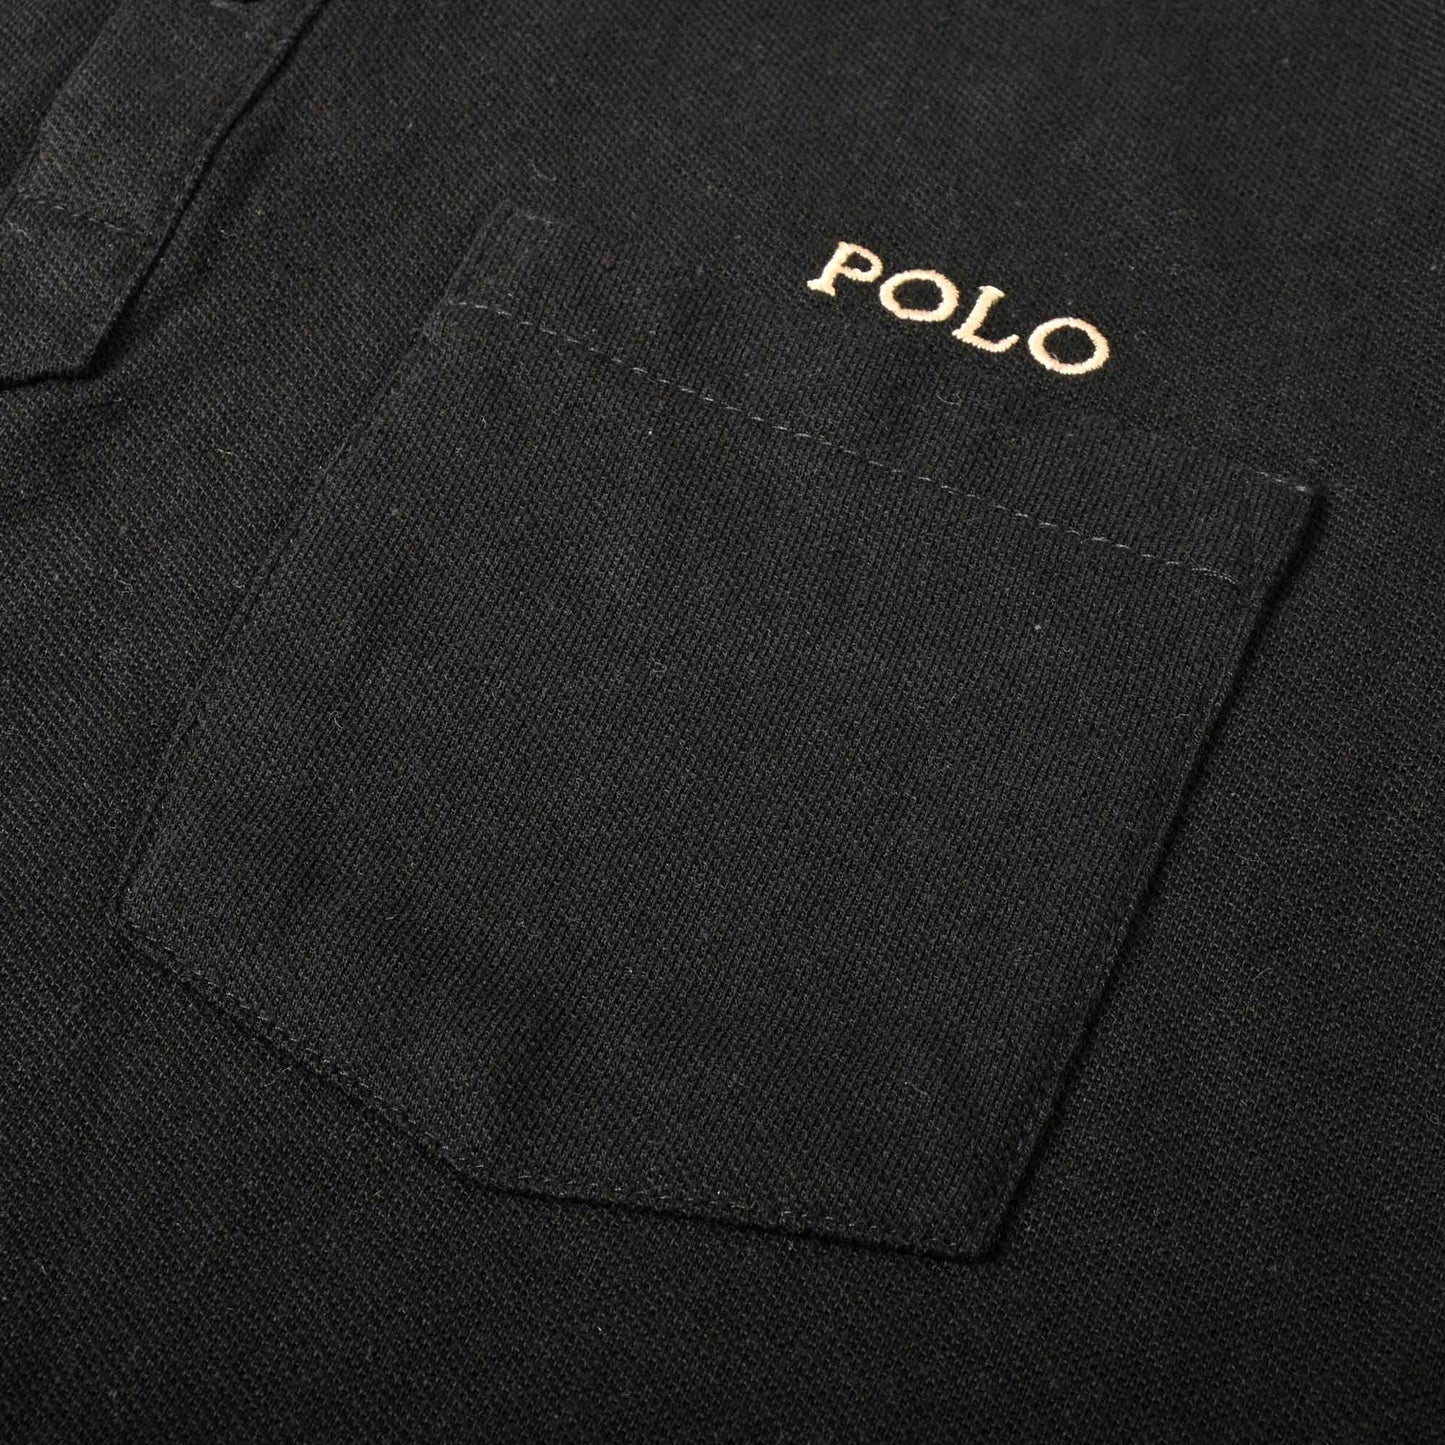 Polo Republica Men's Polo Crest & 8 Embroidered Pocket Polo Shirt Men's Polo Shirt Polo Republica 